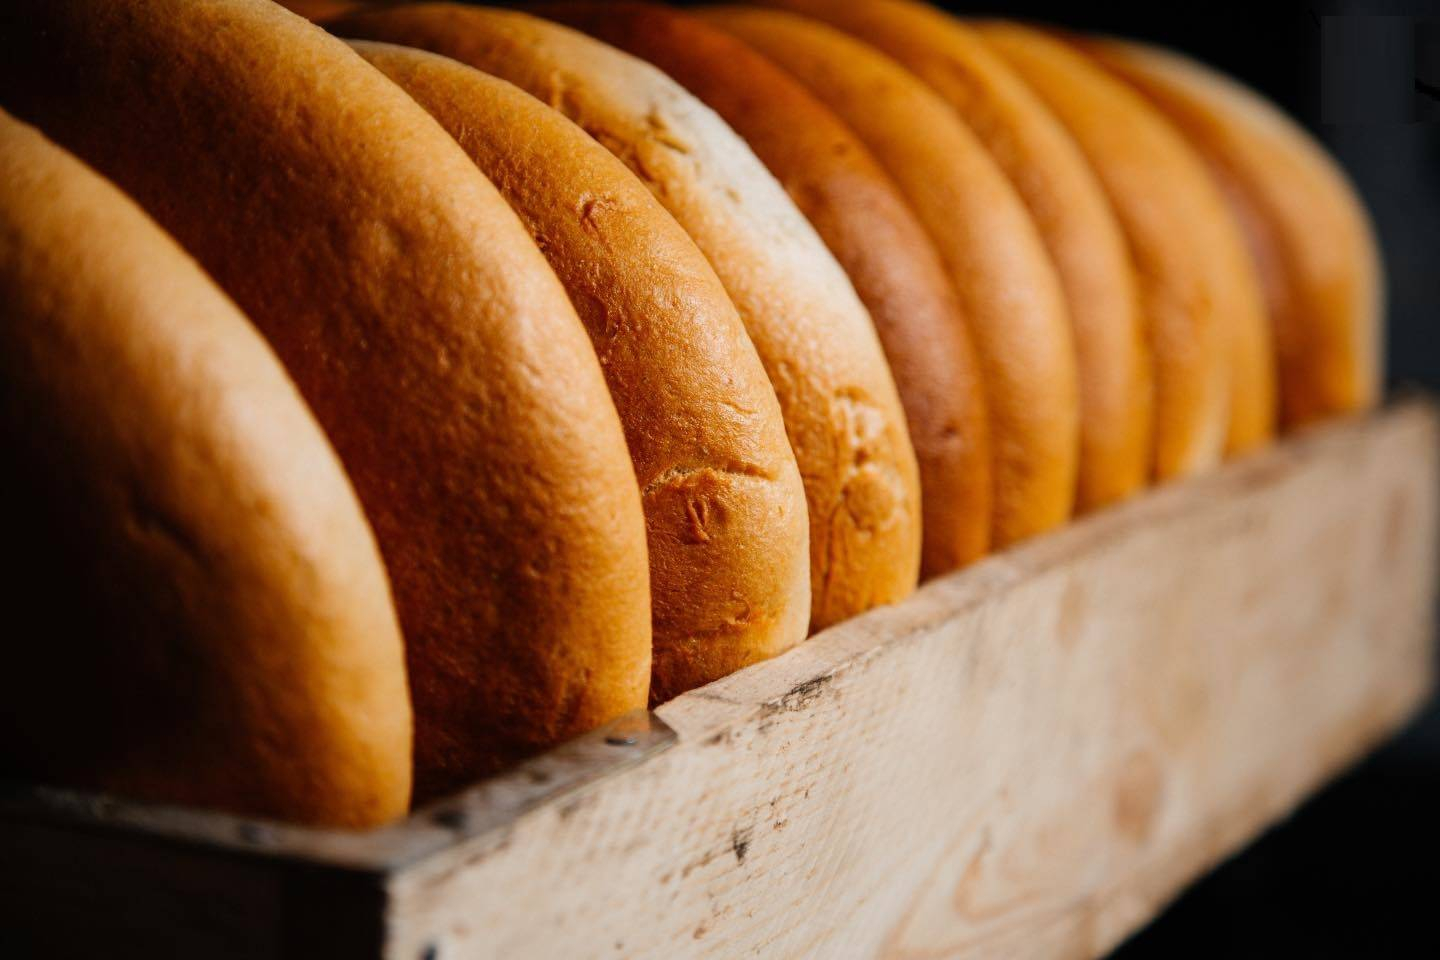 Приведет ли изменение состава муки к подорожанию хлеба? - ВИДЕО